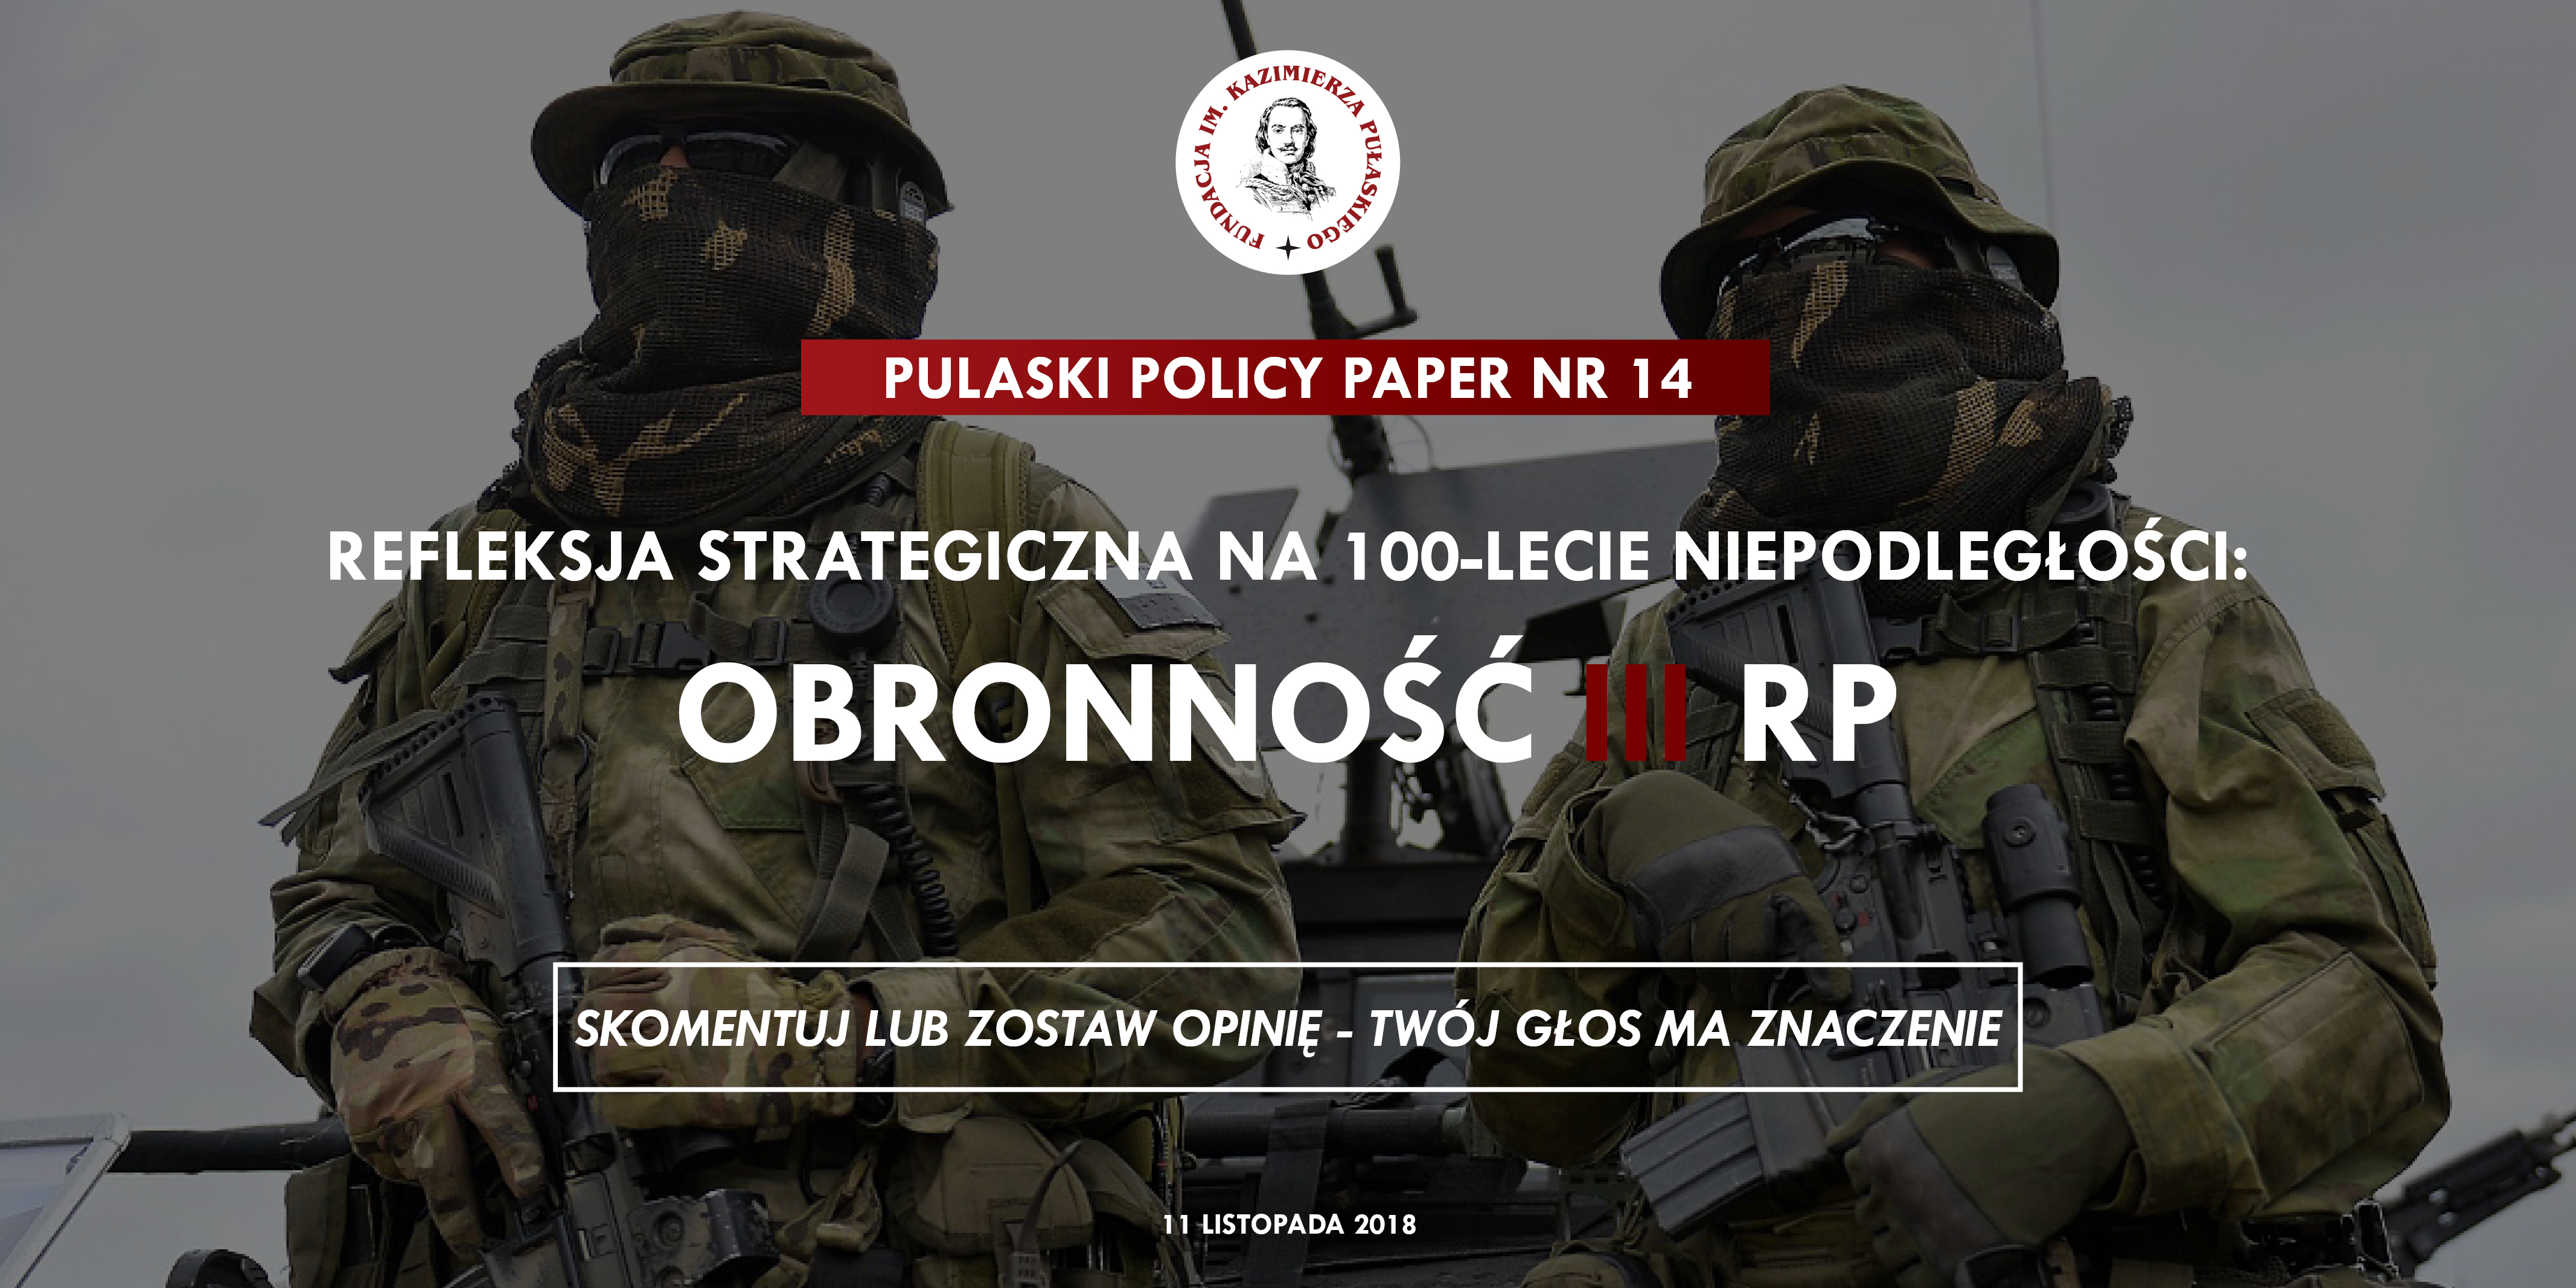 PULASKI POLICY PAPER – S. Koziej: Refleksja strategiczna na 100-lecie niepodległości: obronność III RP